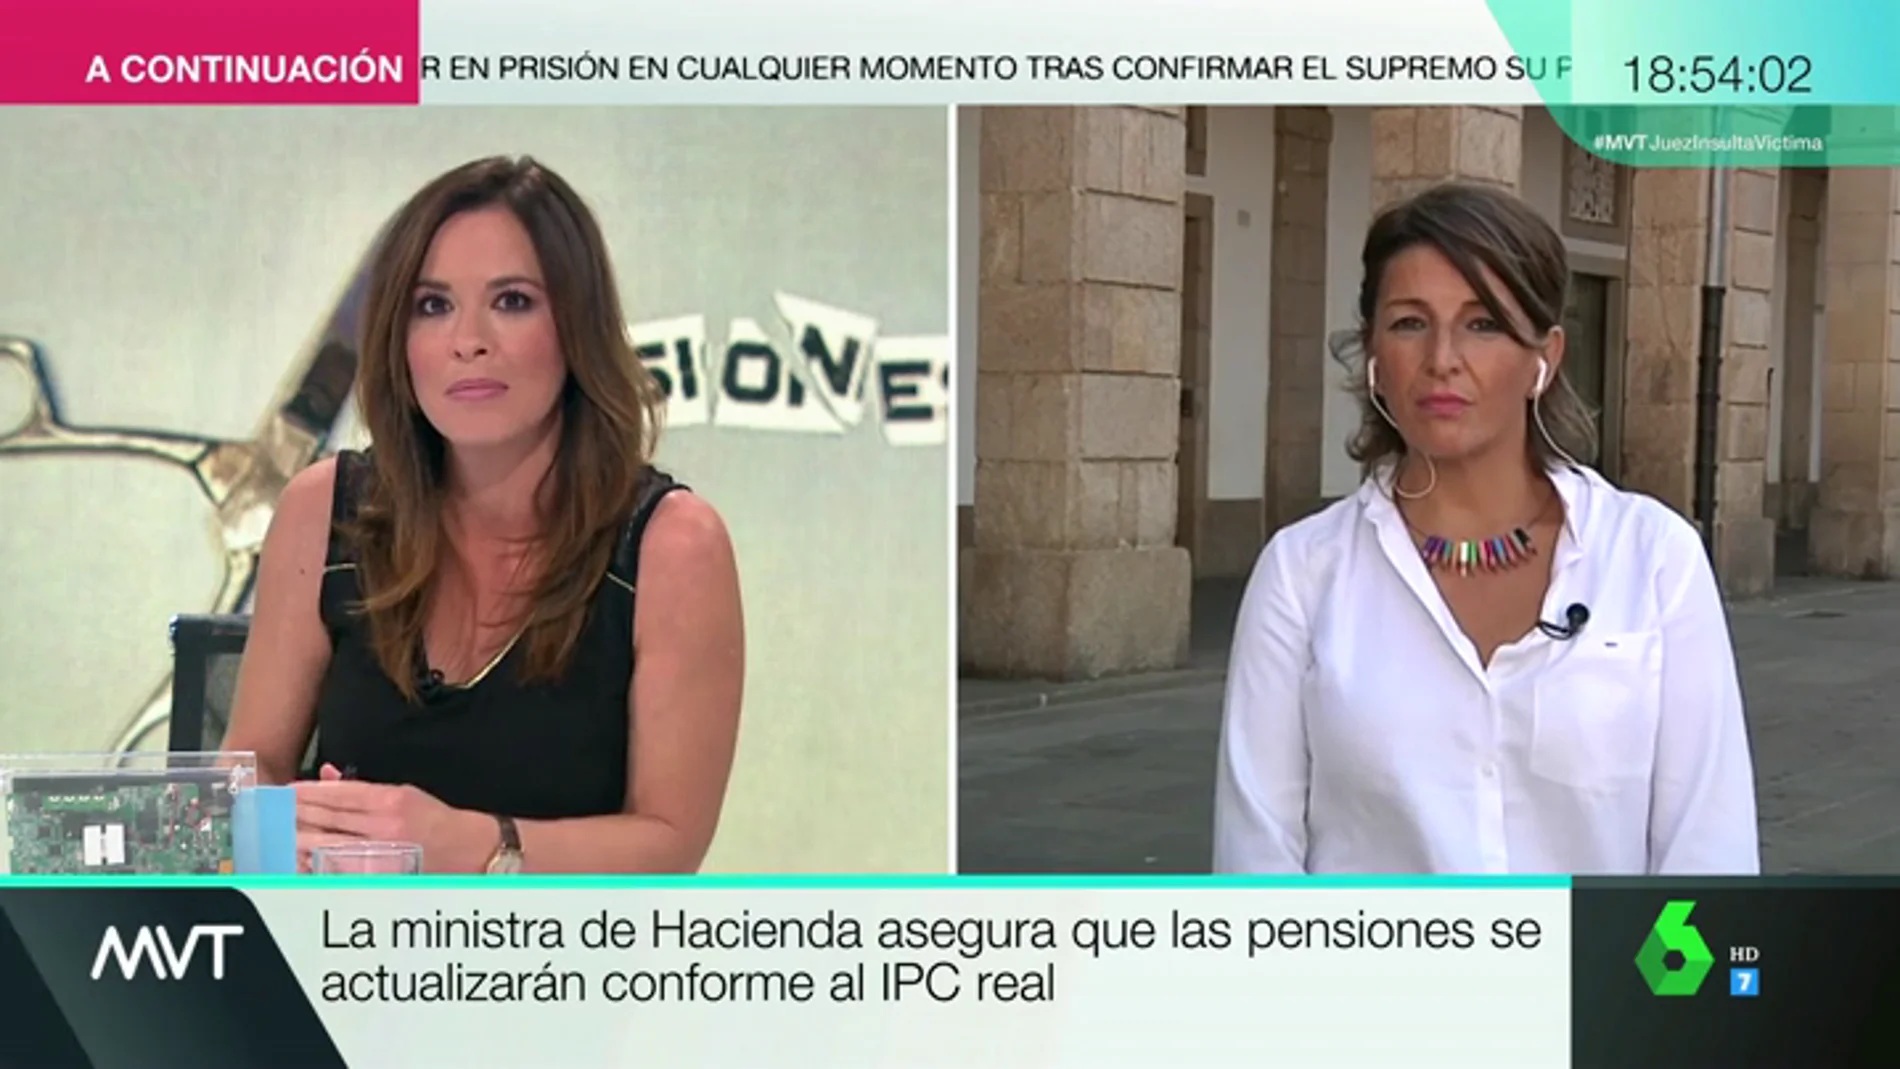 Yolanda Díaz: "Cinco millones de pensiones rondan los 600 euros. Si no suben con el IPC, será decir que vamos a tener pensiones de miseria"